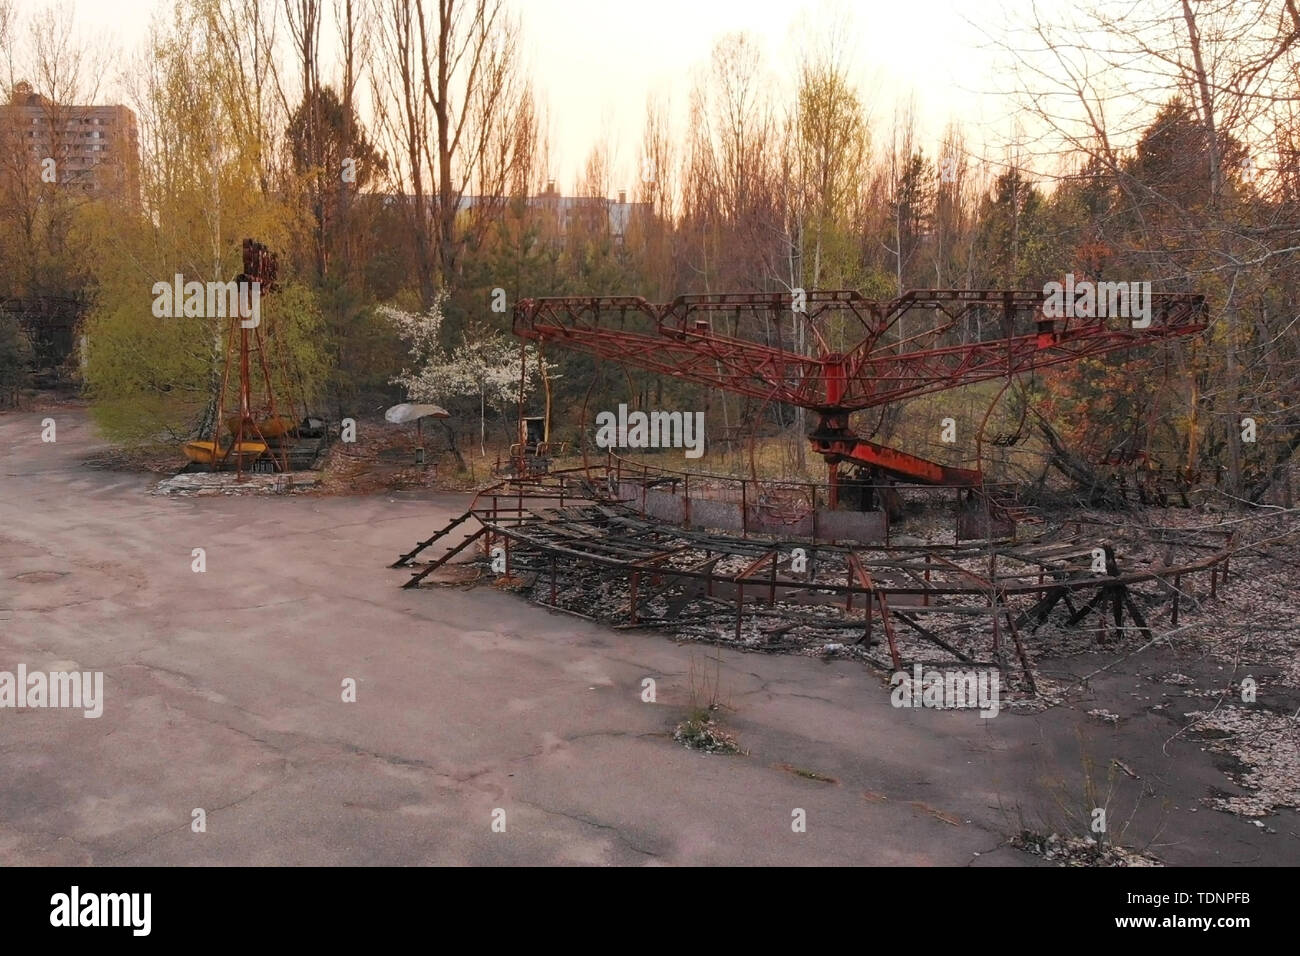 Sperrzone in der Nähe von Tschernobyl. Rusty Karussell im Vergnügungspark der Stadt Pripyat, Verlassenen verlassenen Stadt nach einer nuklearen di Stockfoto